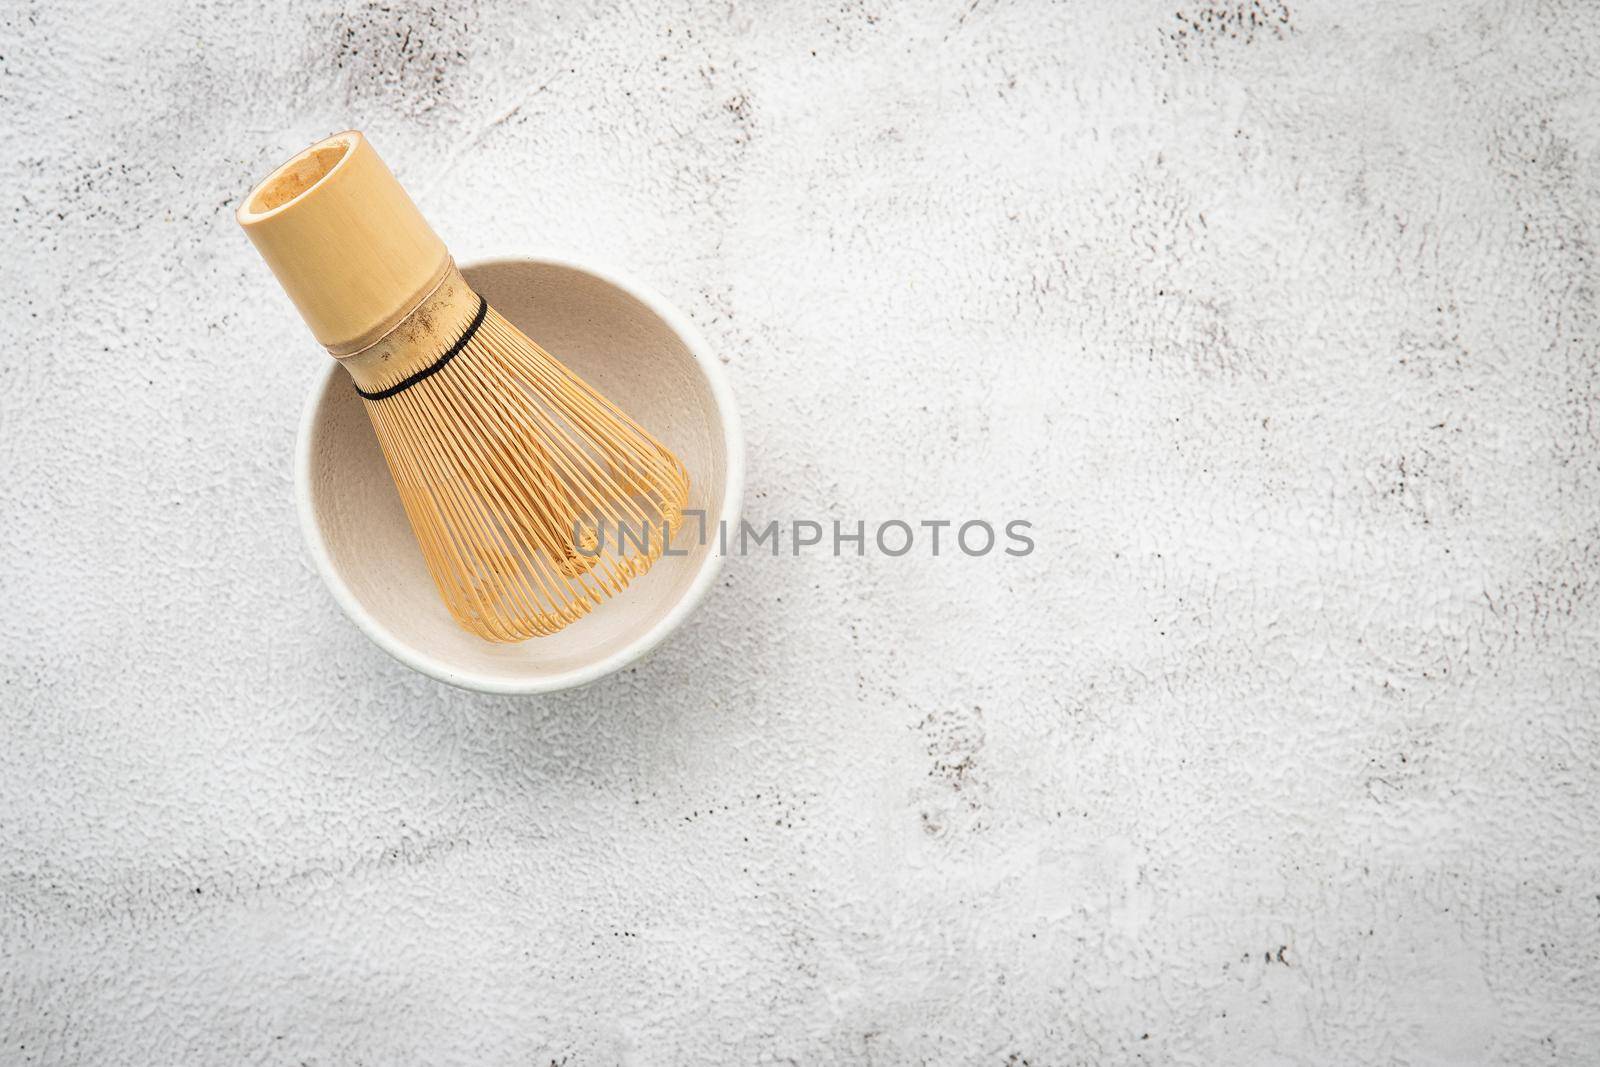 Matcha set bamboo matcha whisk and chashaku tea scoop,matcha ceramic bowl set up on white concrete background.